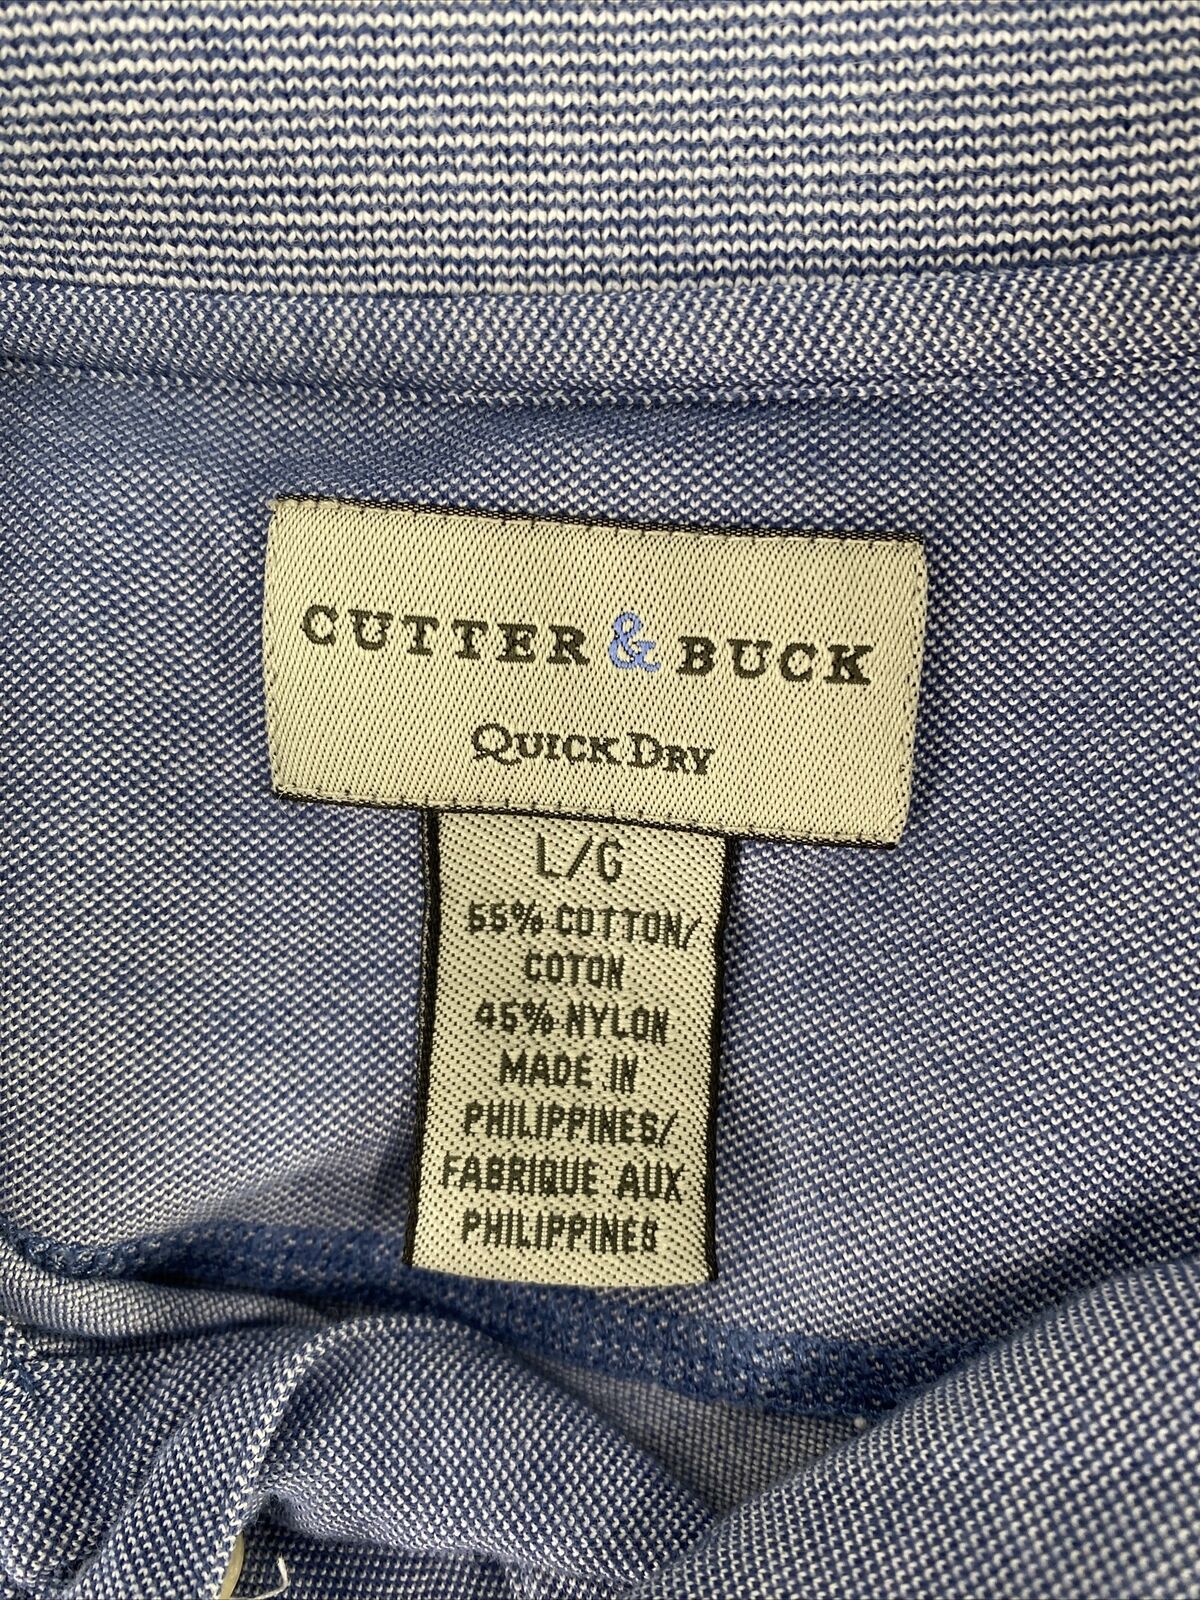 Cutter & Buck Mens Blue Quick Dry Short Sleeve Cotton Golf Polo Shirt - L